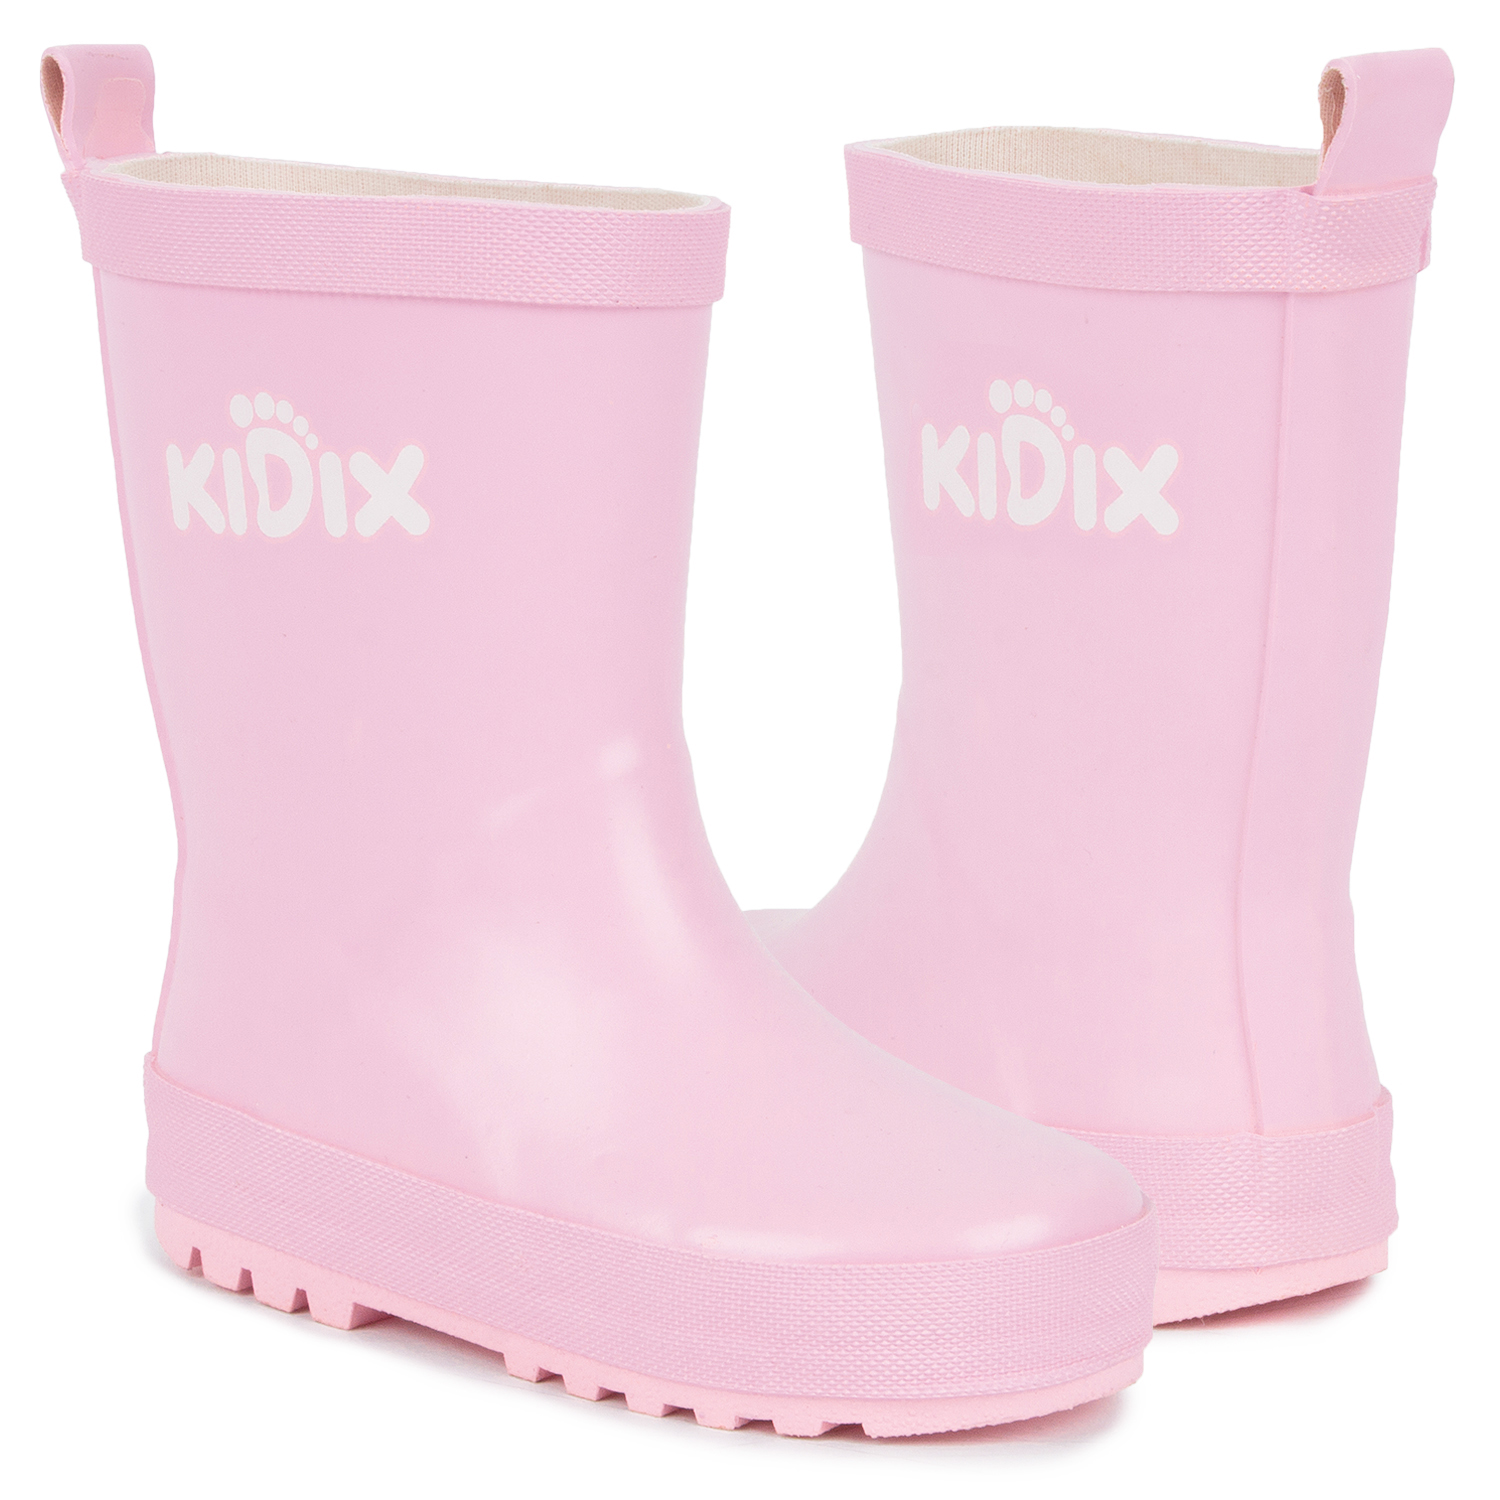 фото Резиновые сапоги для детей kidix jds20-7 pink розовый 27